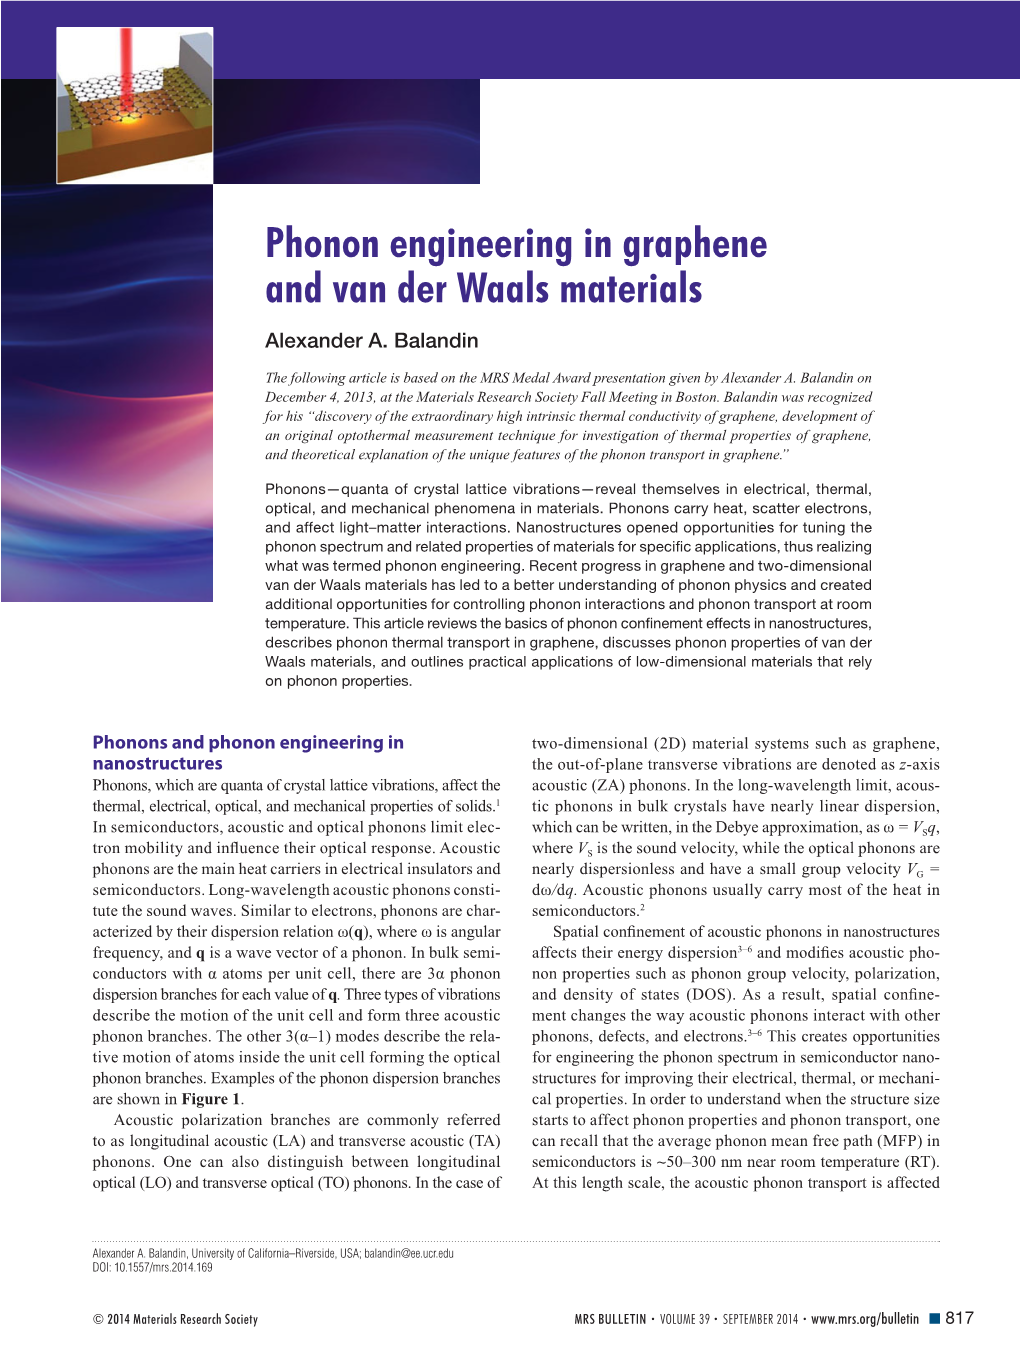 Phonon Engineering in Graphene and Van Der Waals Materials Alexander A